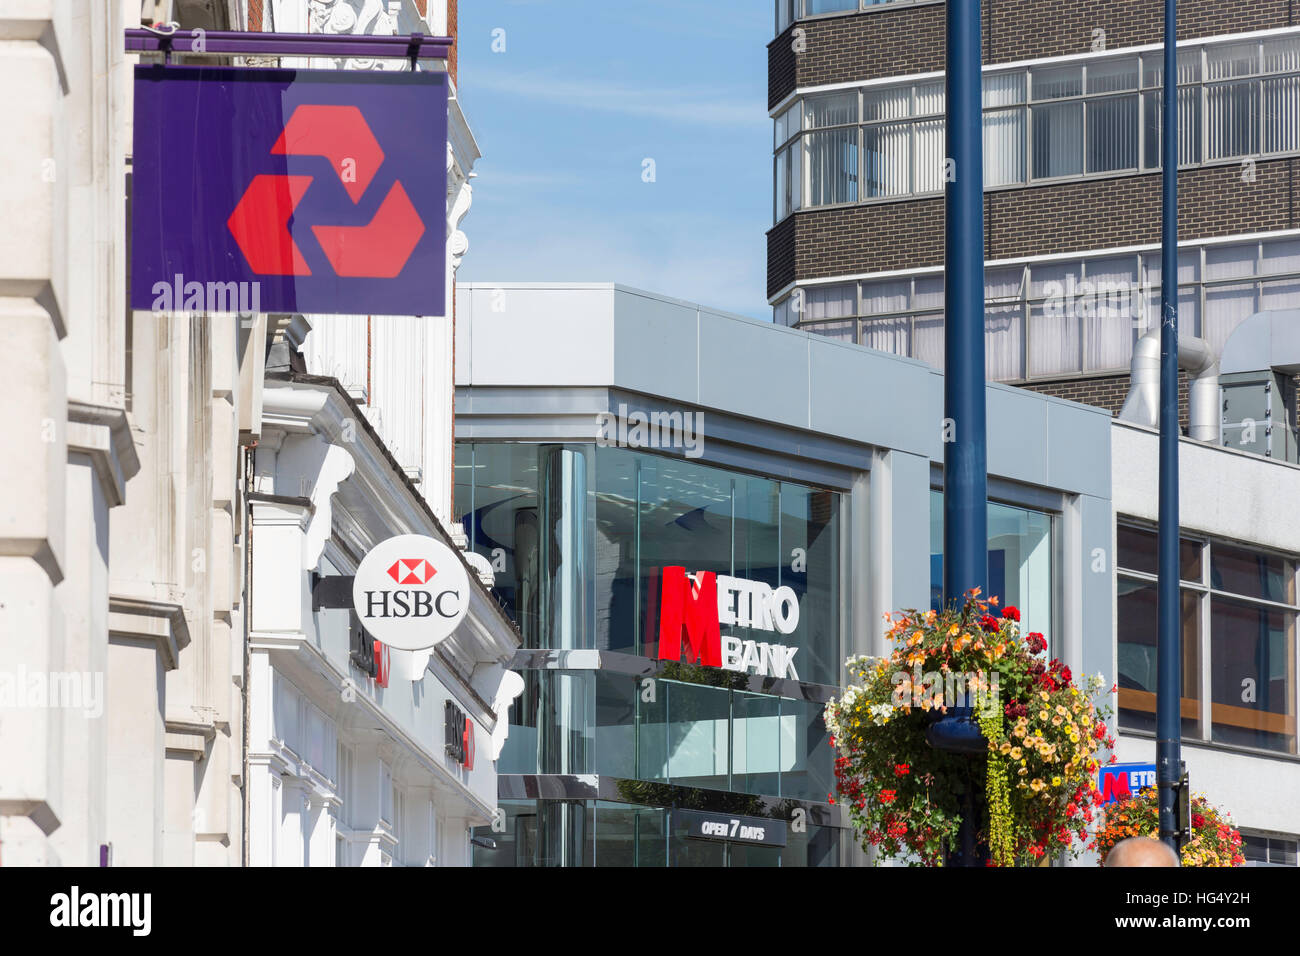 Rangée de banques de détail (HSBC, NatWest Bank), Métro et marché (Jubilé) Square, Maidstone, Kent, Angleterre, Royaume-Uni Banque D'Images